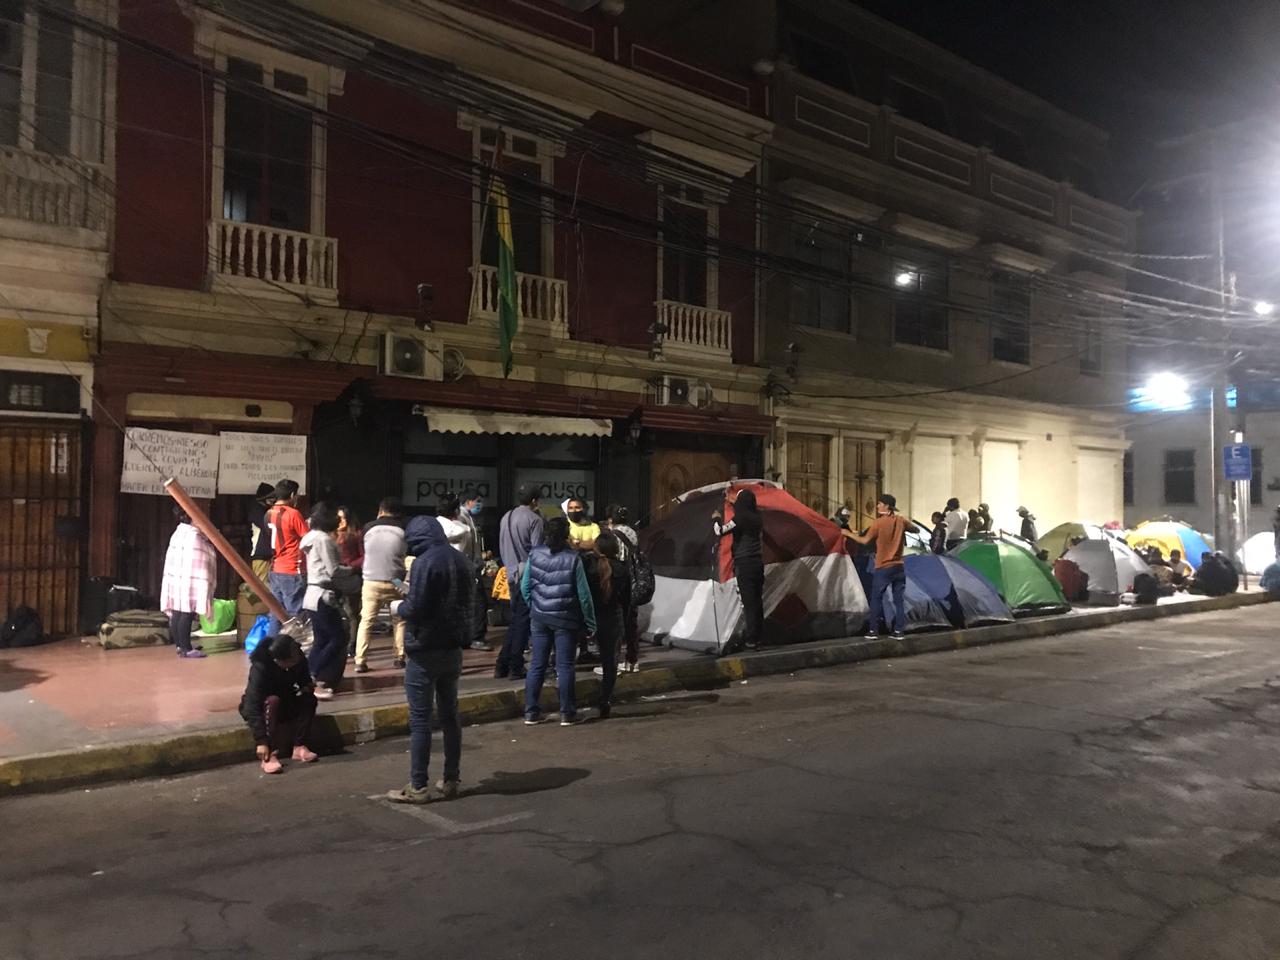 253 bolivianos se encuentran viviendo en la calle en Iquique sin poder retornar al país andino